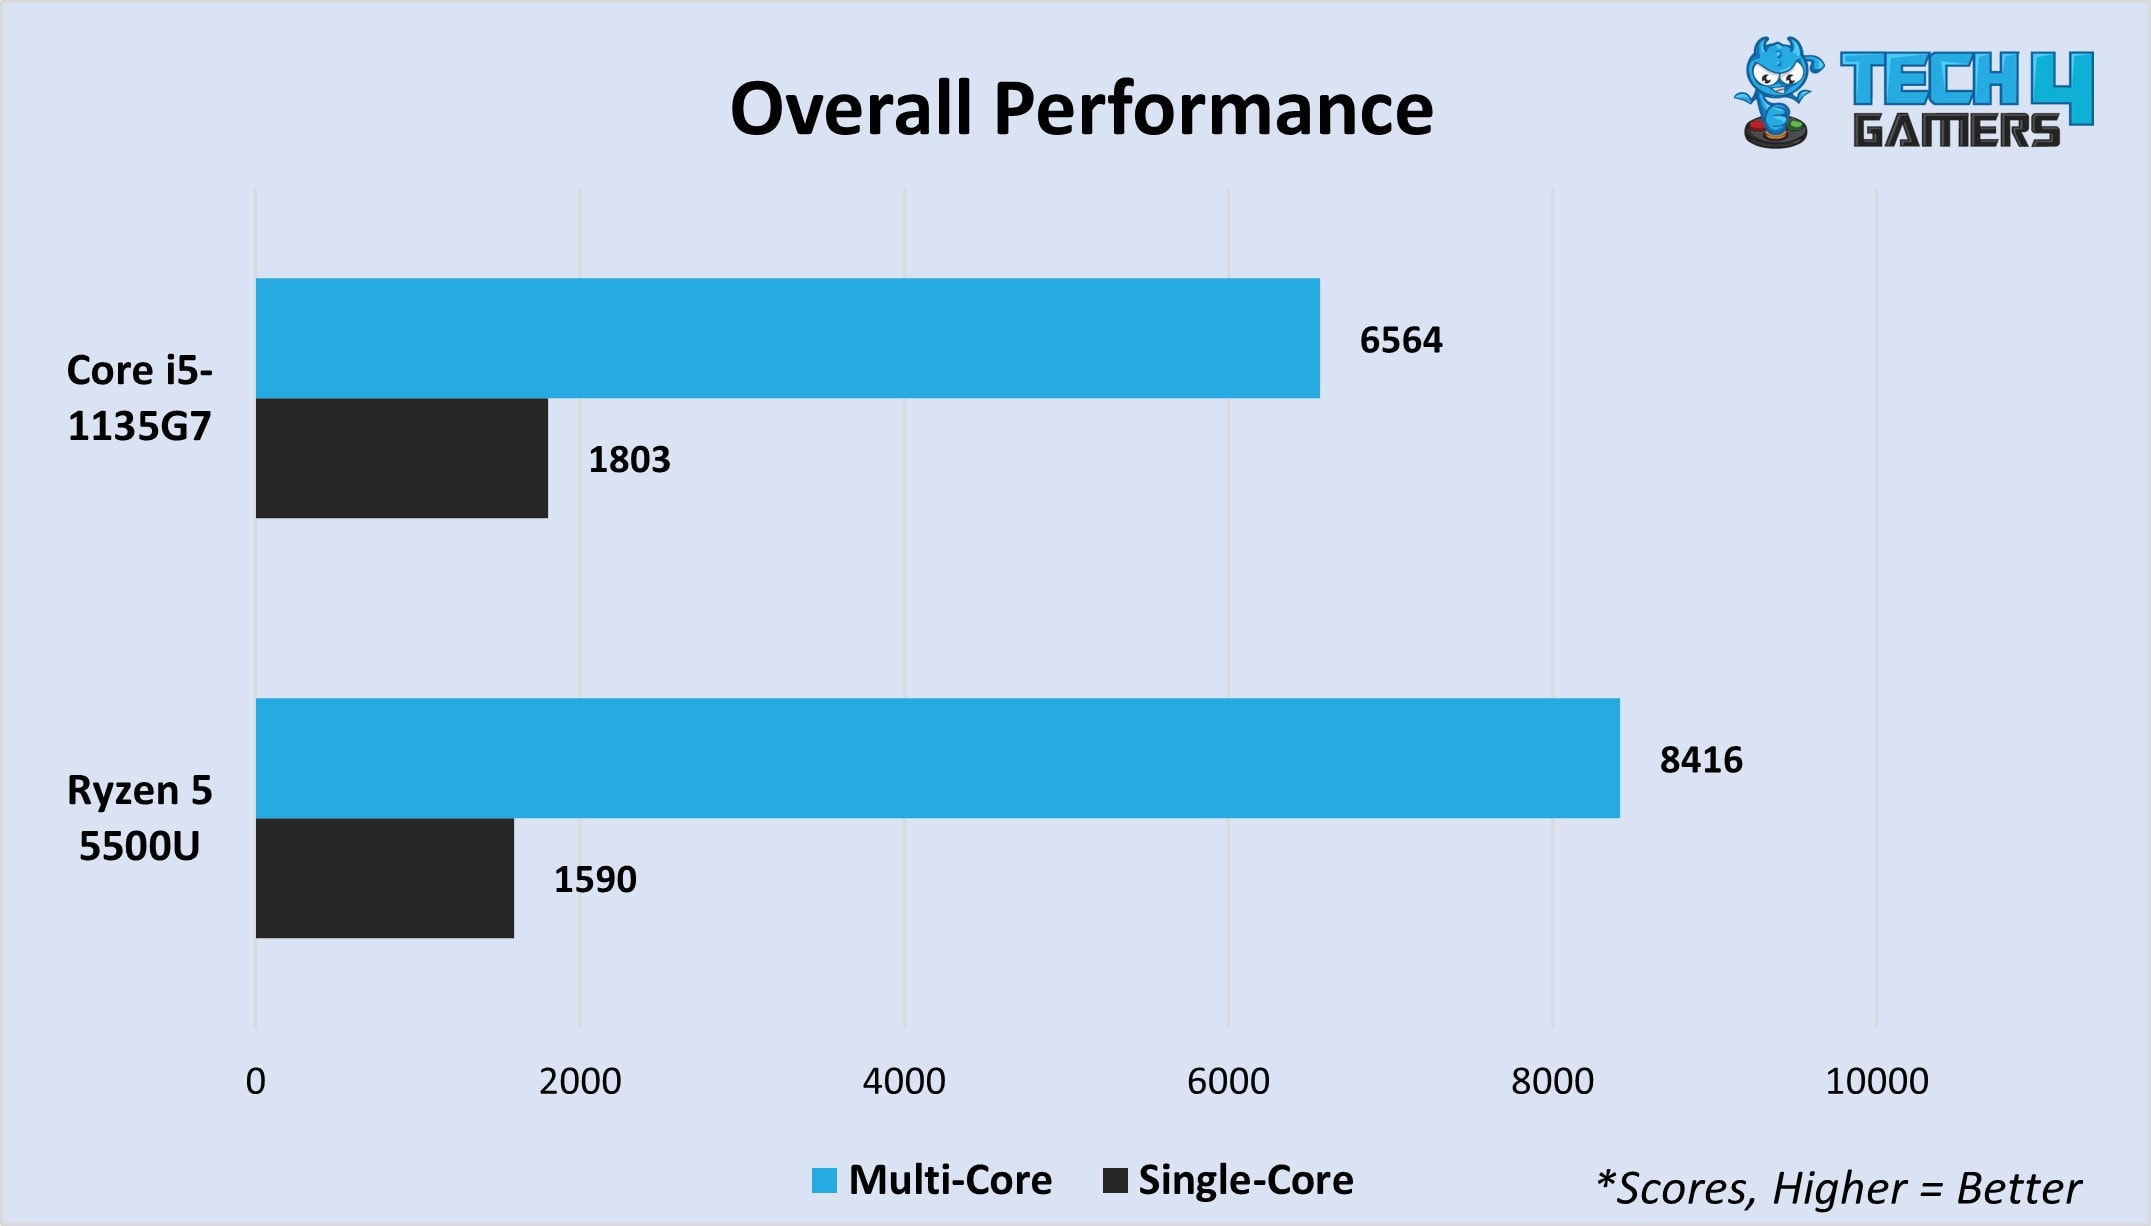 Overall multi-core and single-core scores